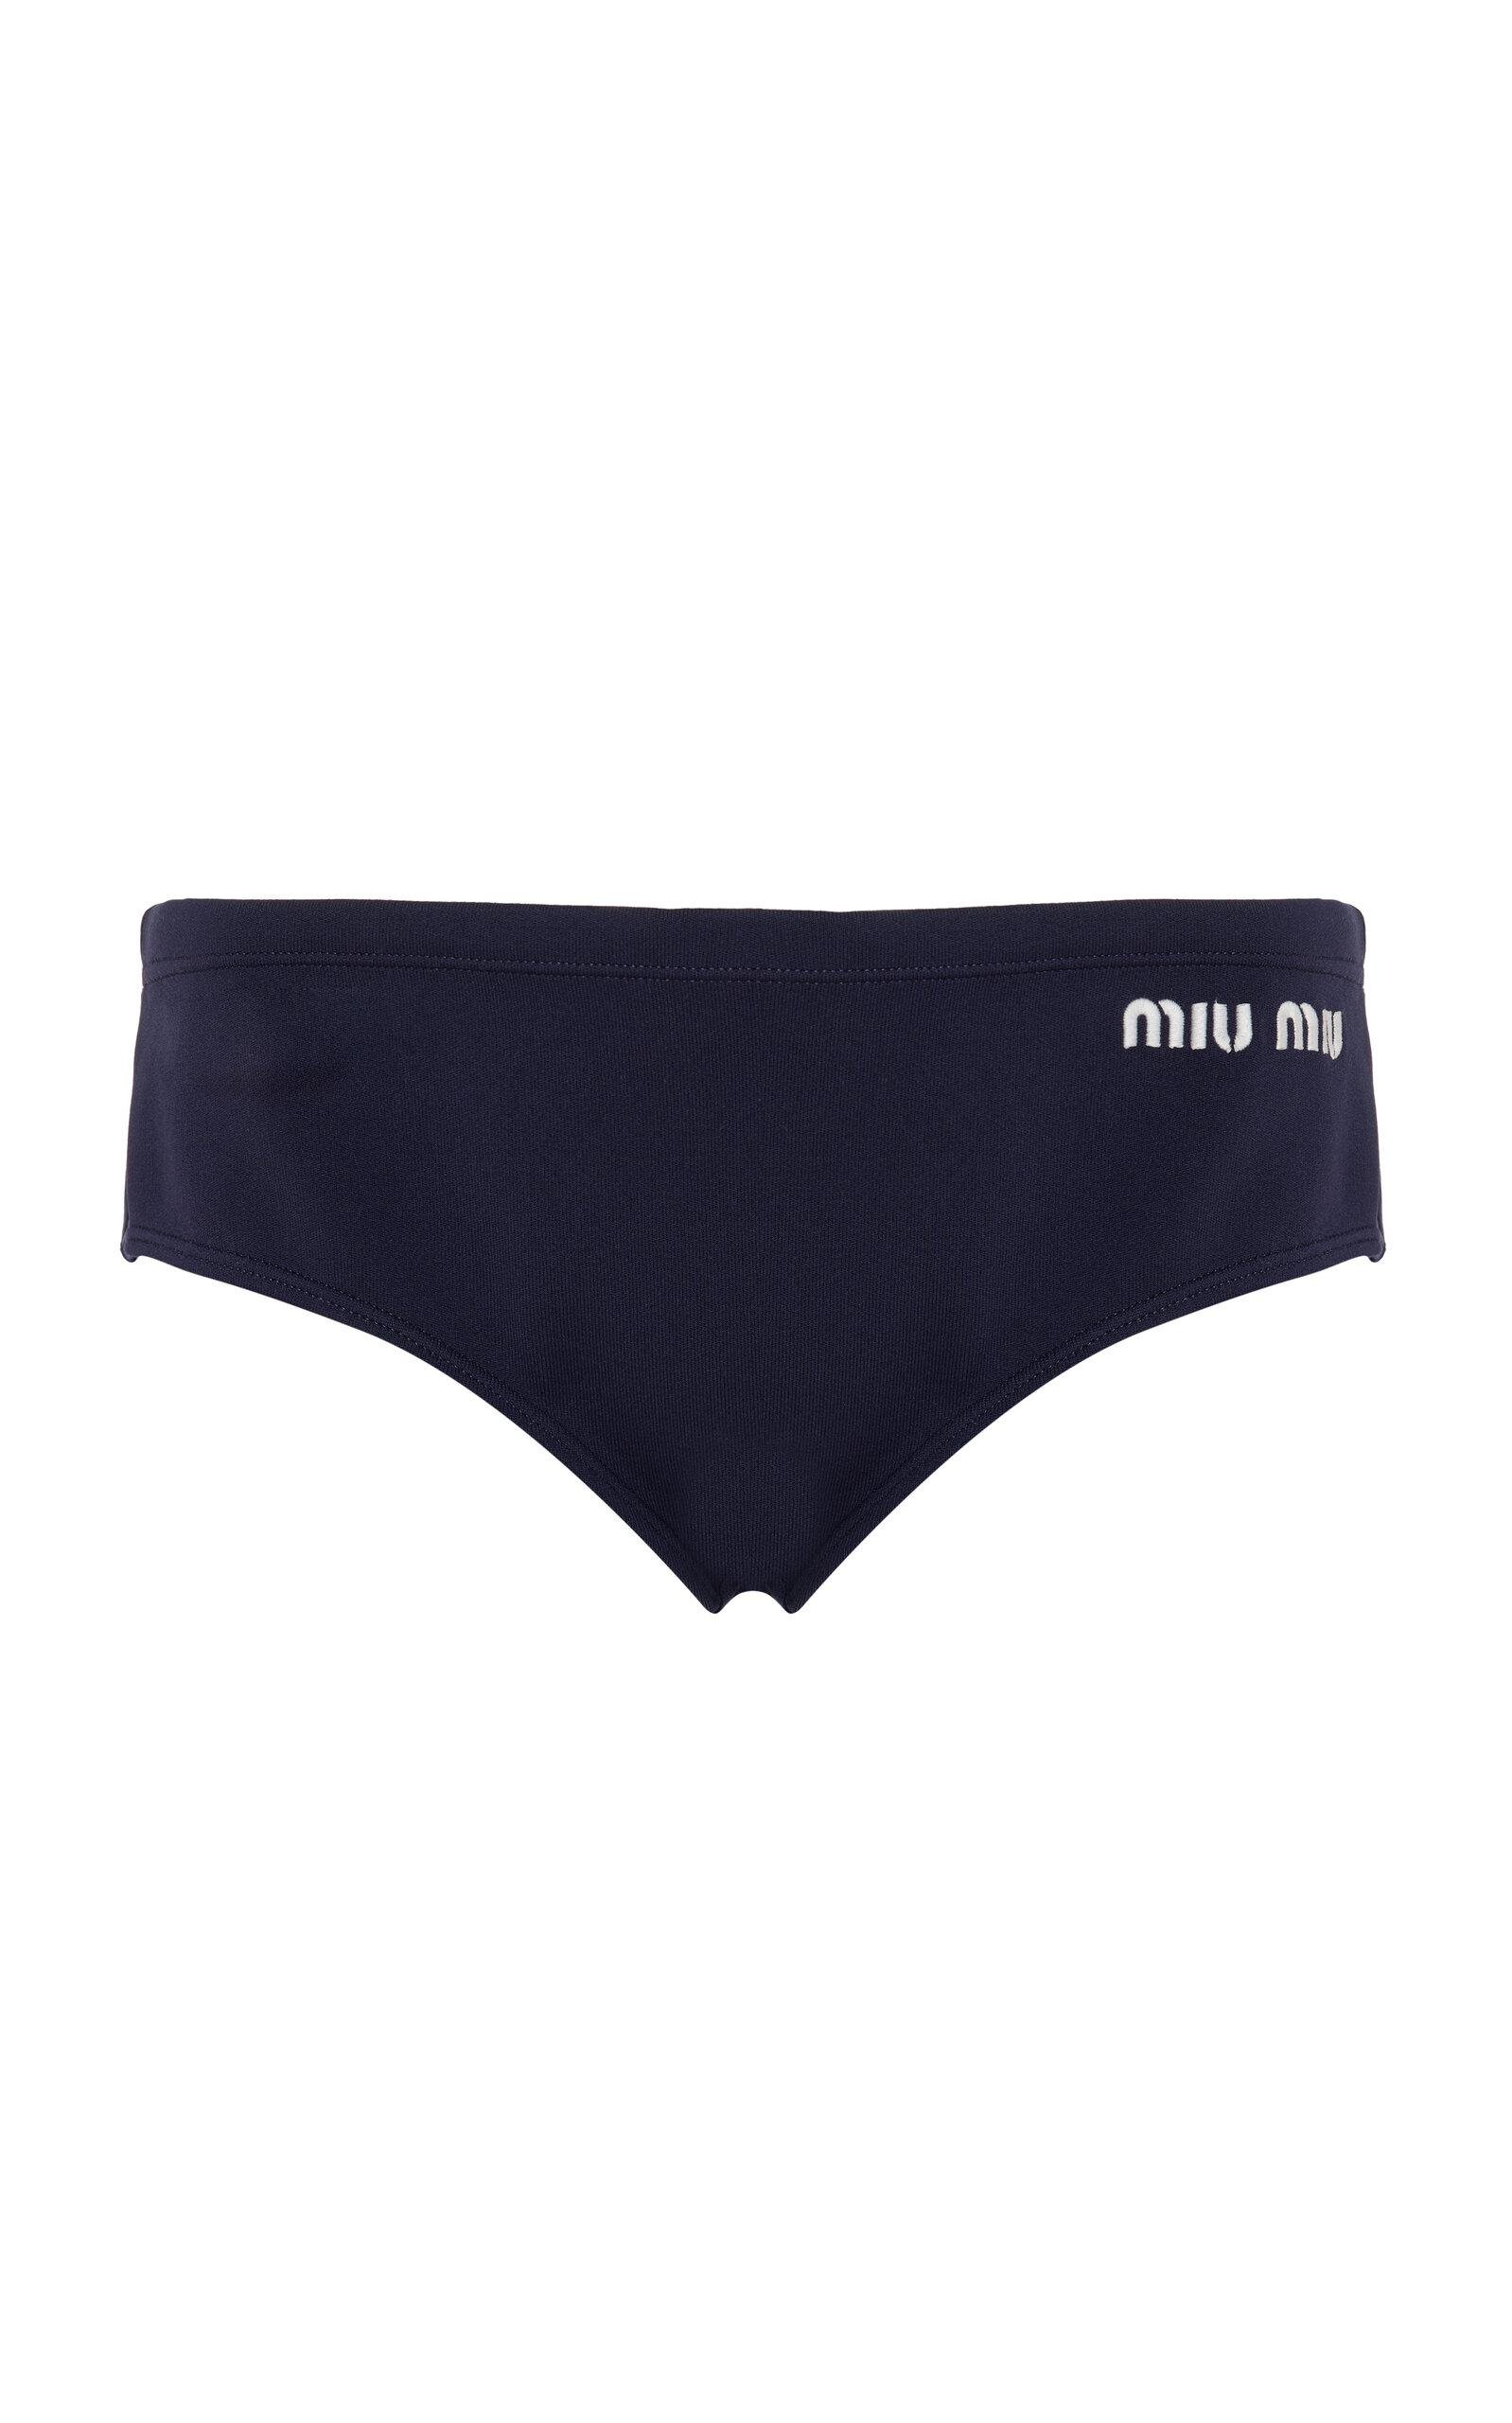 Miu Miu - Logo-Knit Nylon Panties - Blue - IT 42 - Moda Operandi by MIU MIU